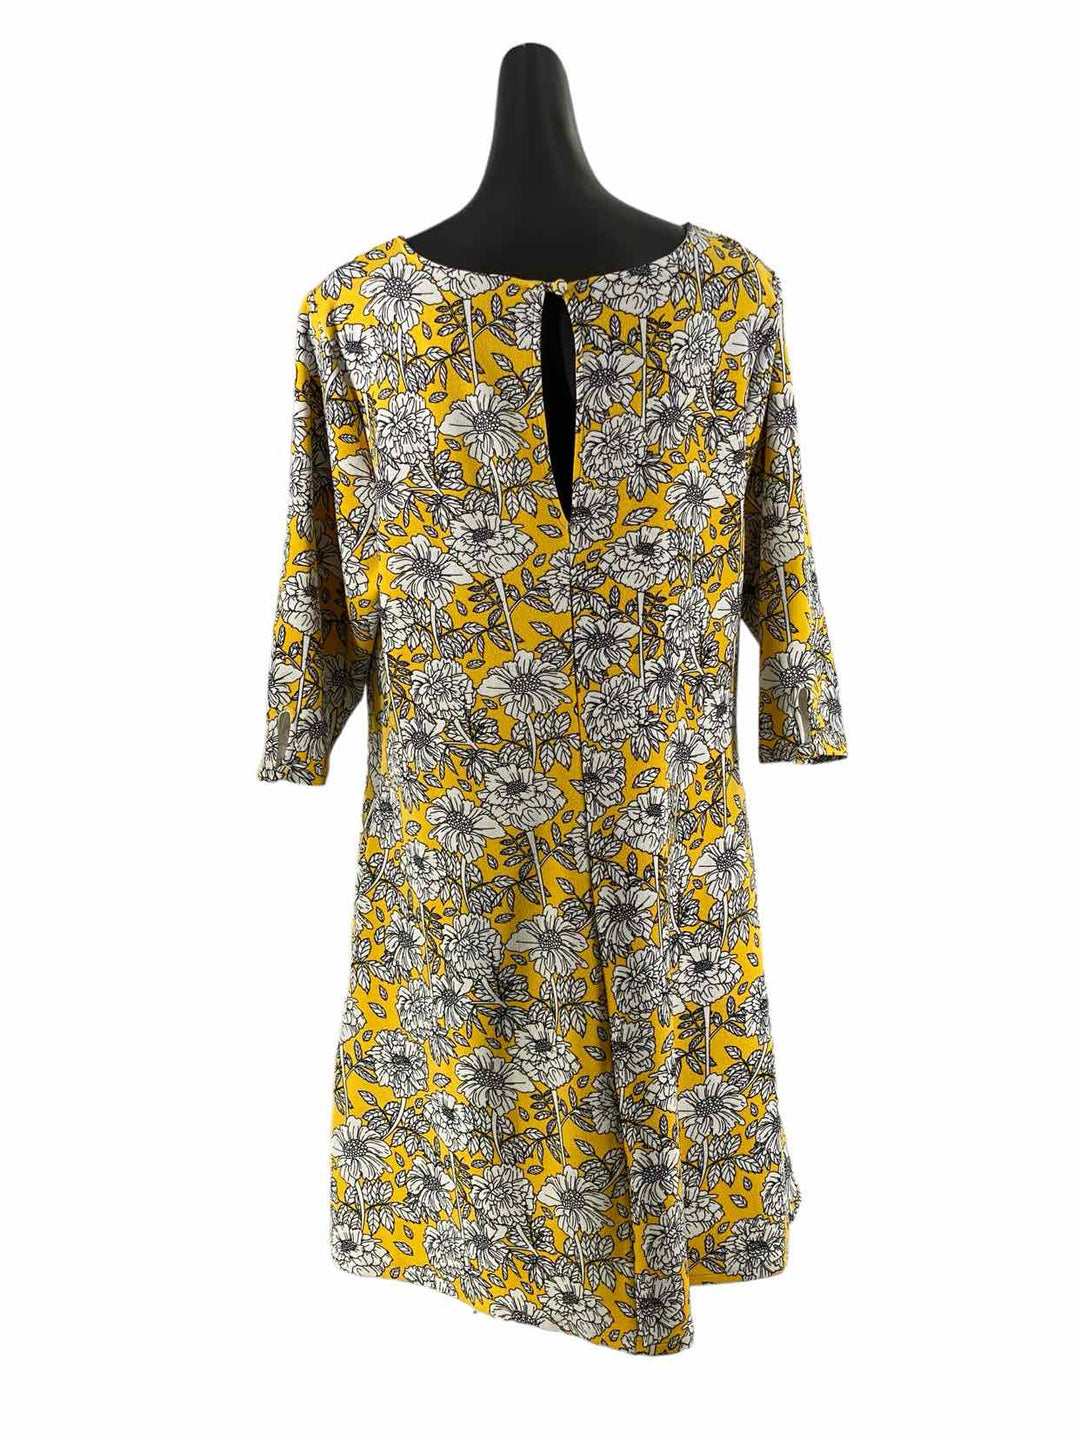 Smak Parlour Size 1X Yellow White Floral Dress